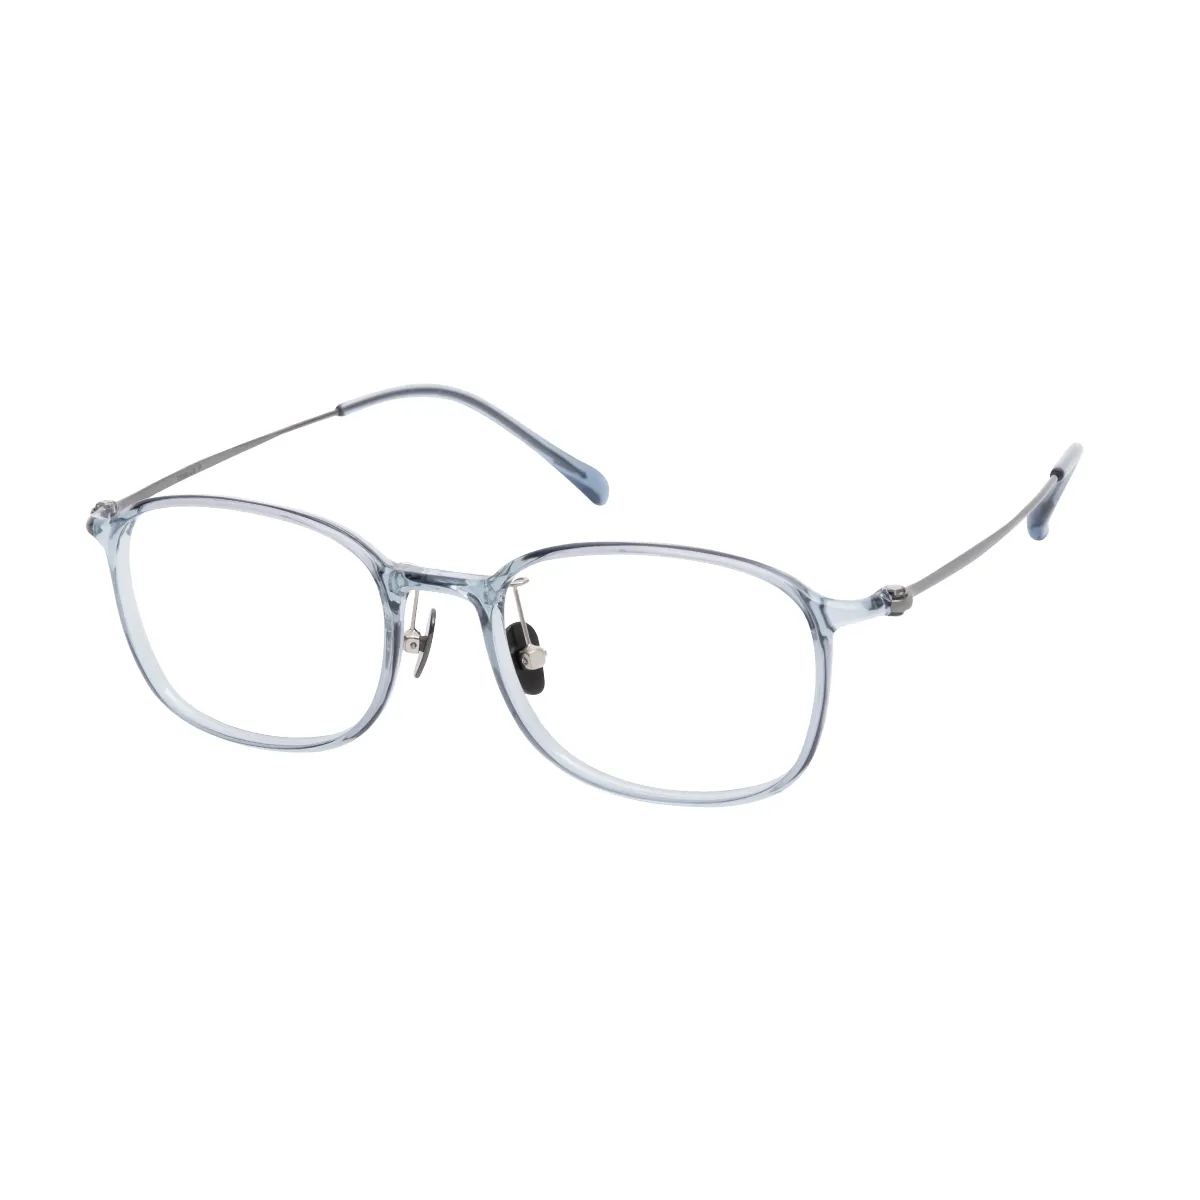 Hasey - Rectangle Gray Glasses for Men & Women